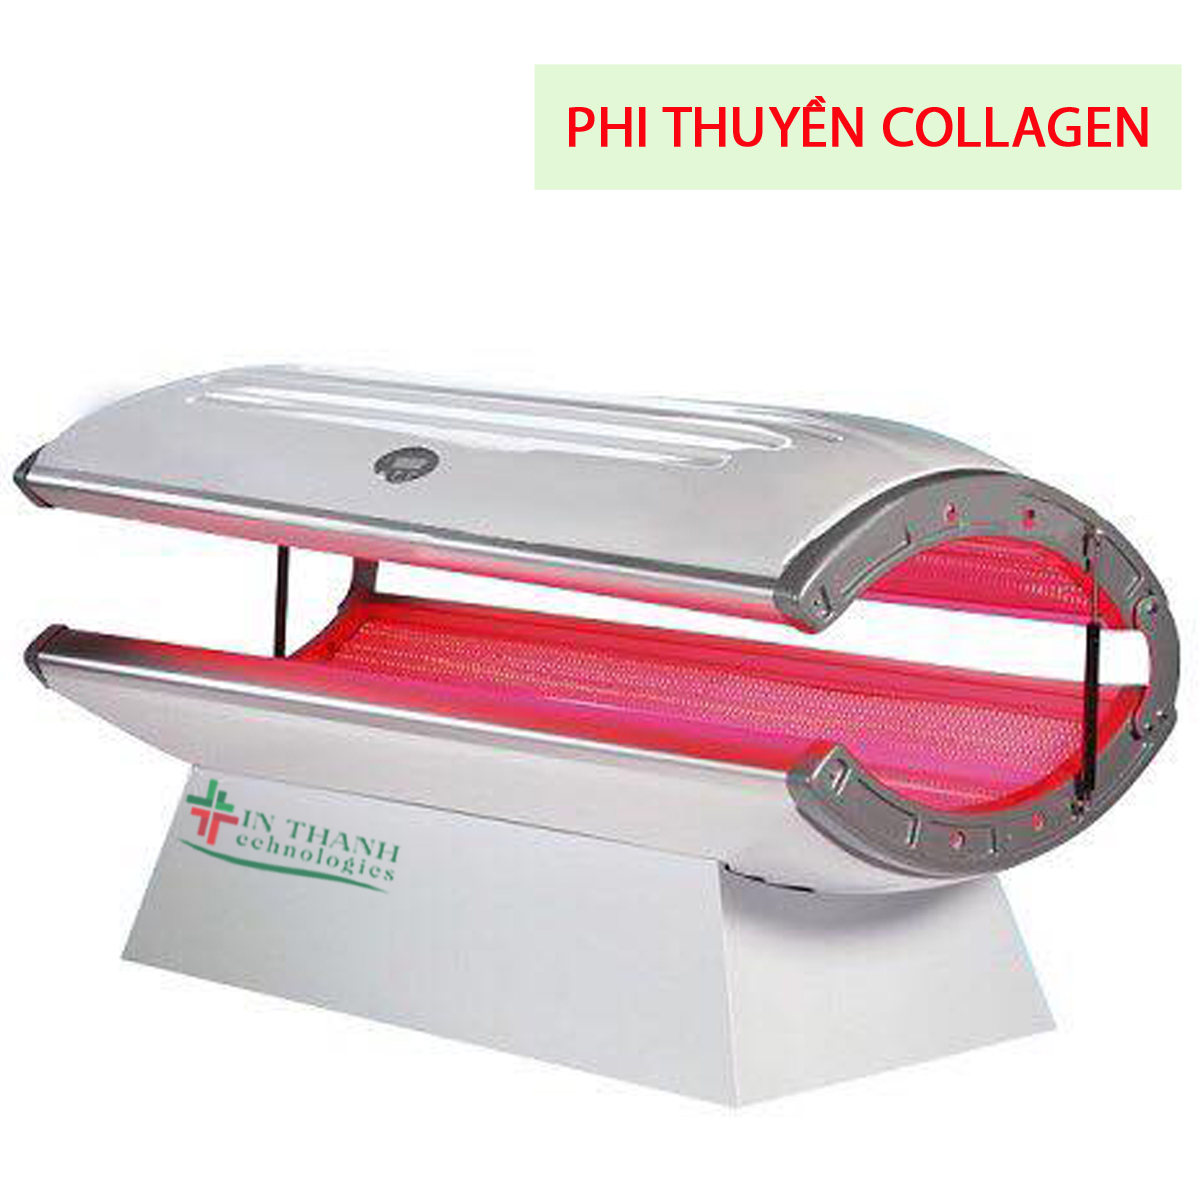 phi-thuyen-collagen-2.1.jpg (435 KB)